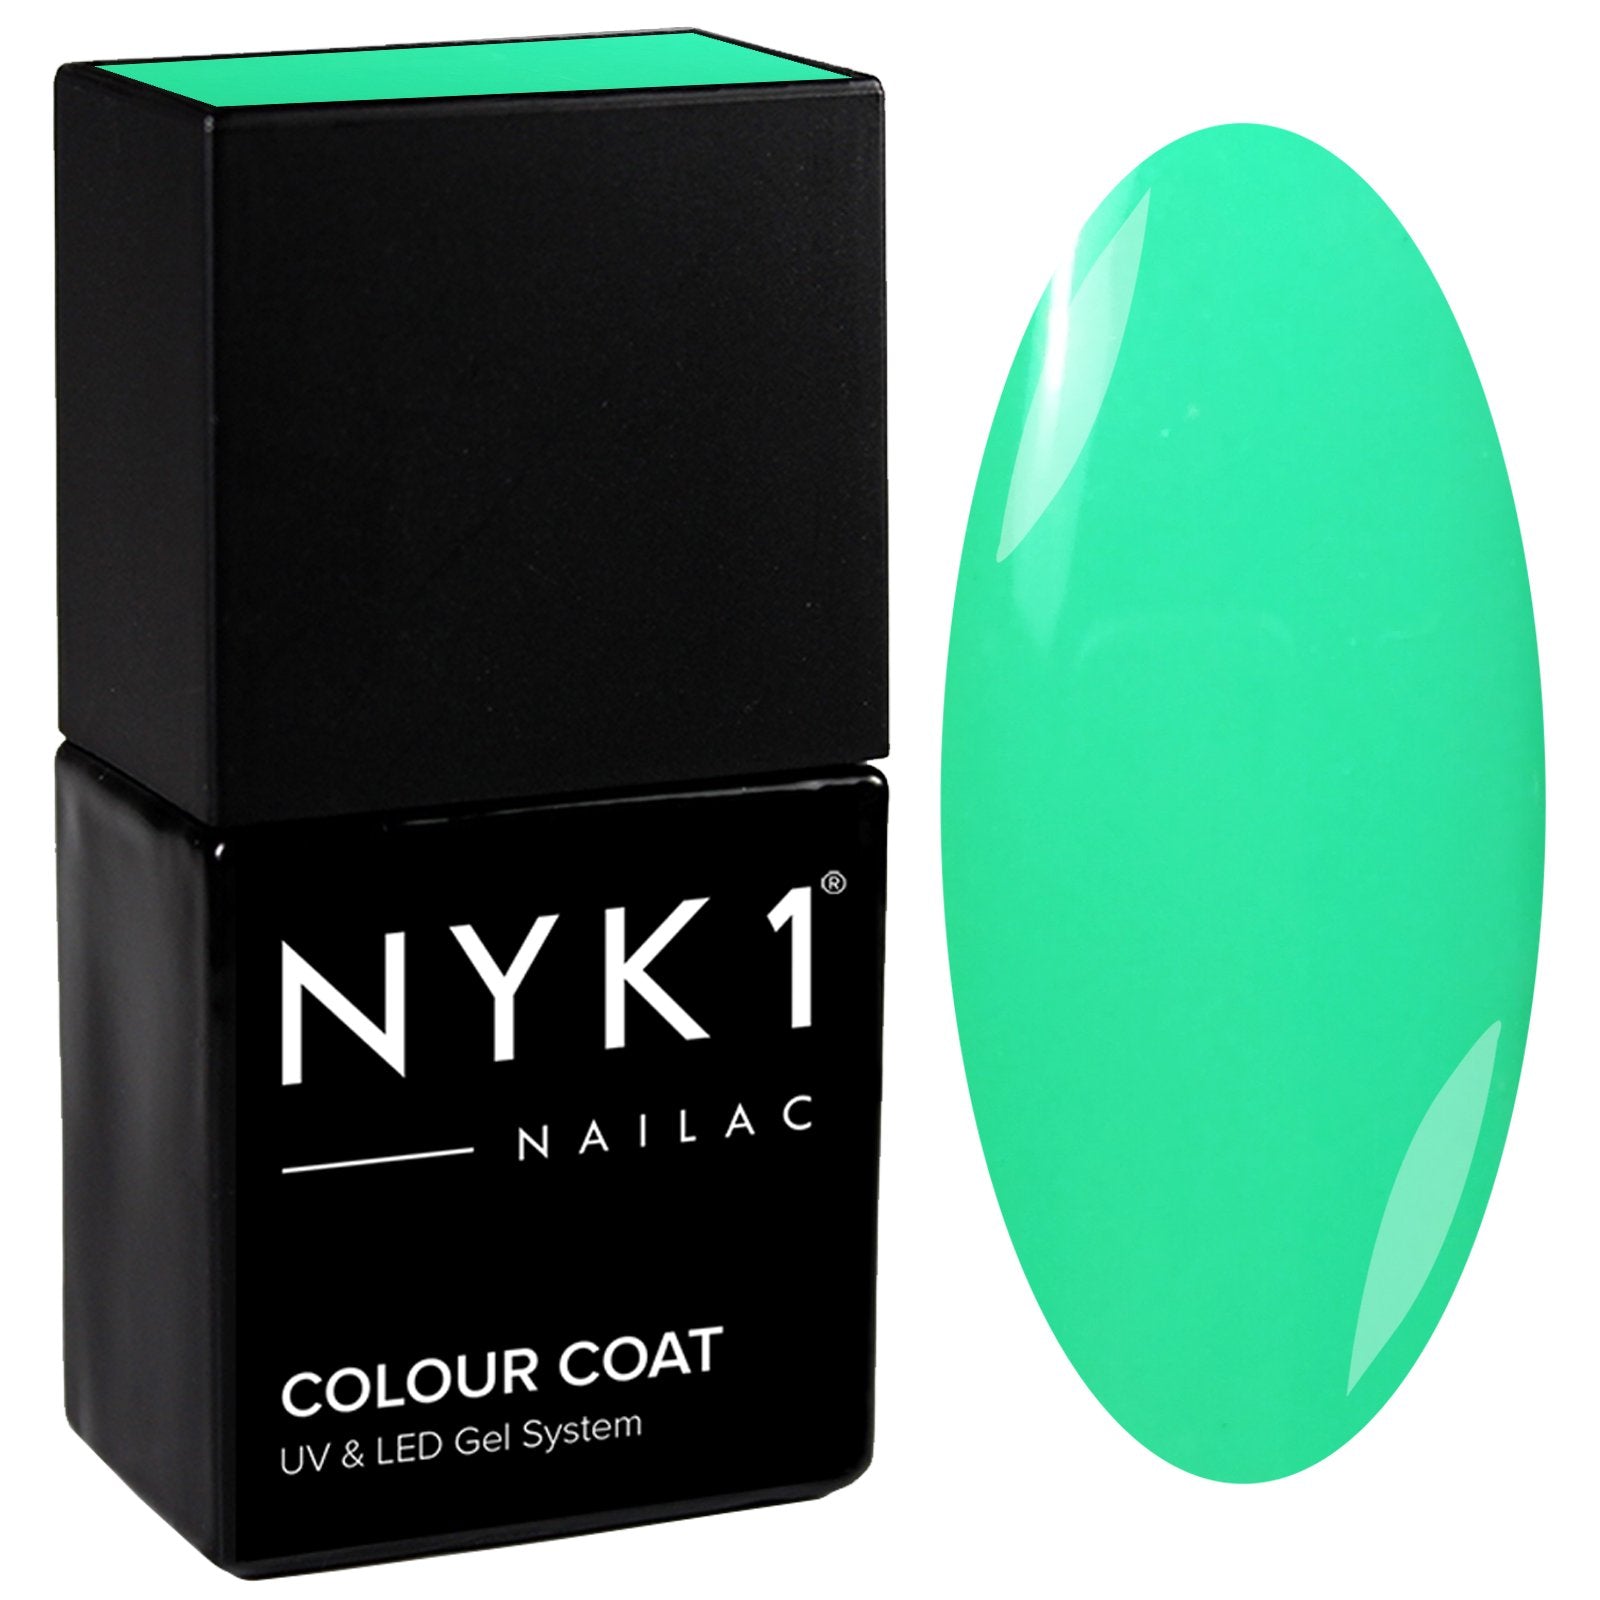 NYK1 Nailac Mint Sorbet Pastel Green Gel Nail Polish